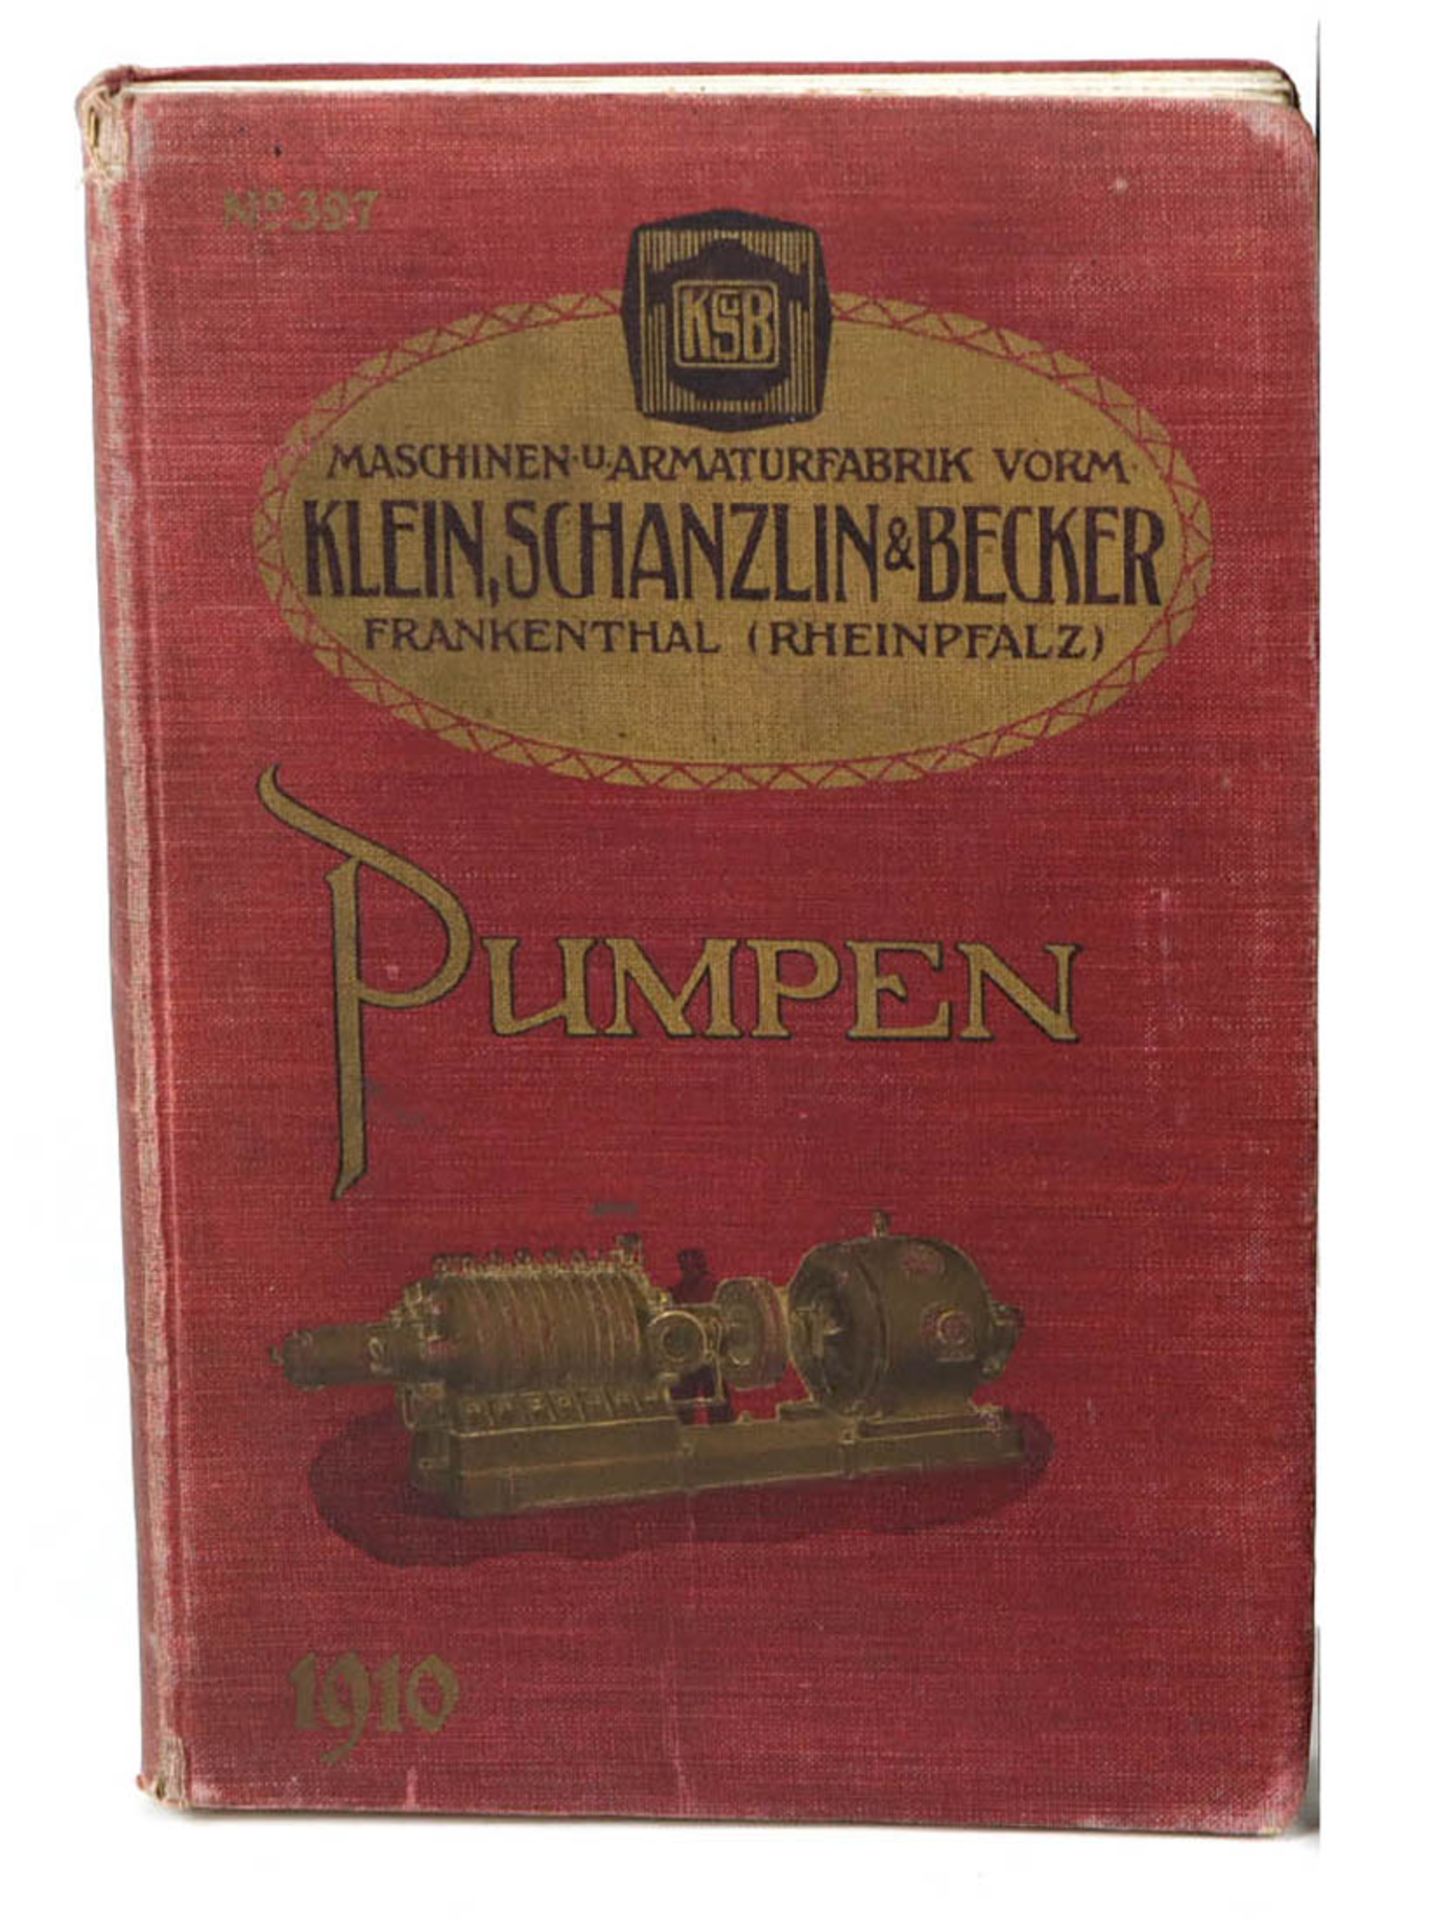 PumpenKatalog der Maschinen- u. Armaturenfabrik Klein, Schanzlin & Becker Frankenthal, mit sehr